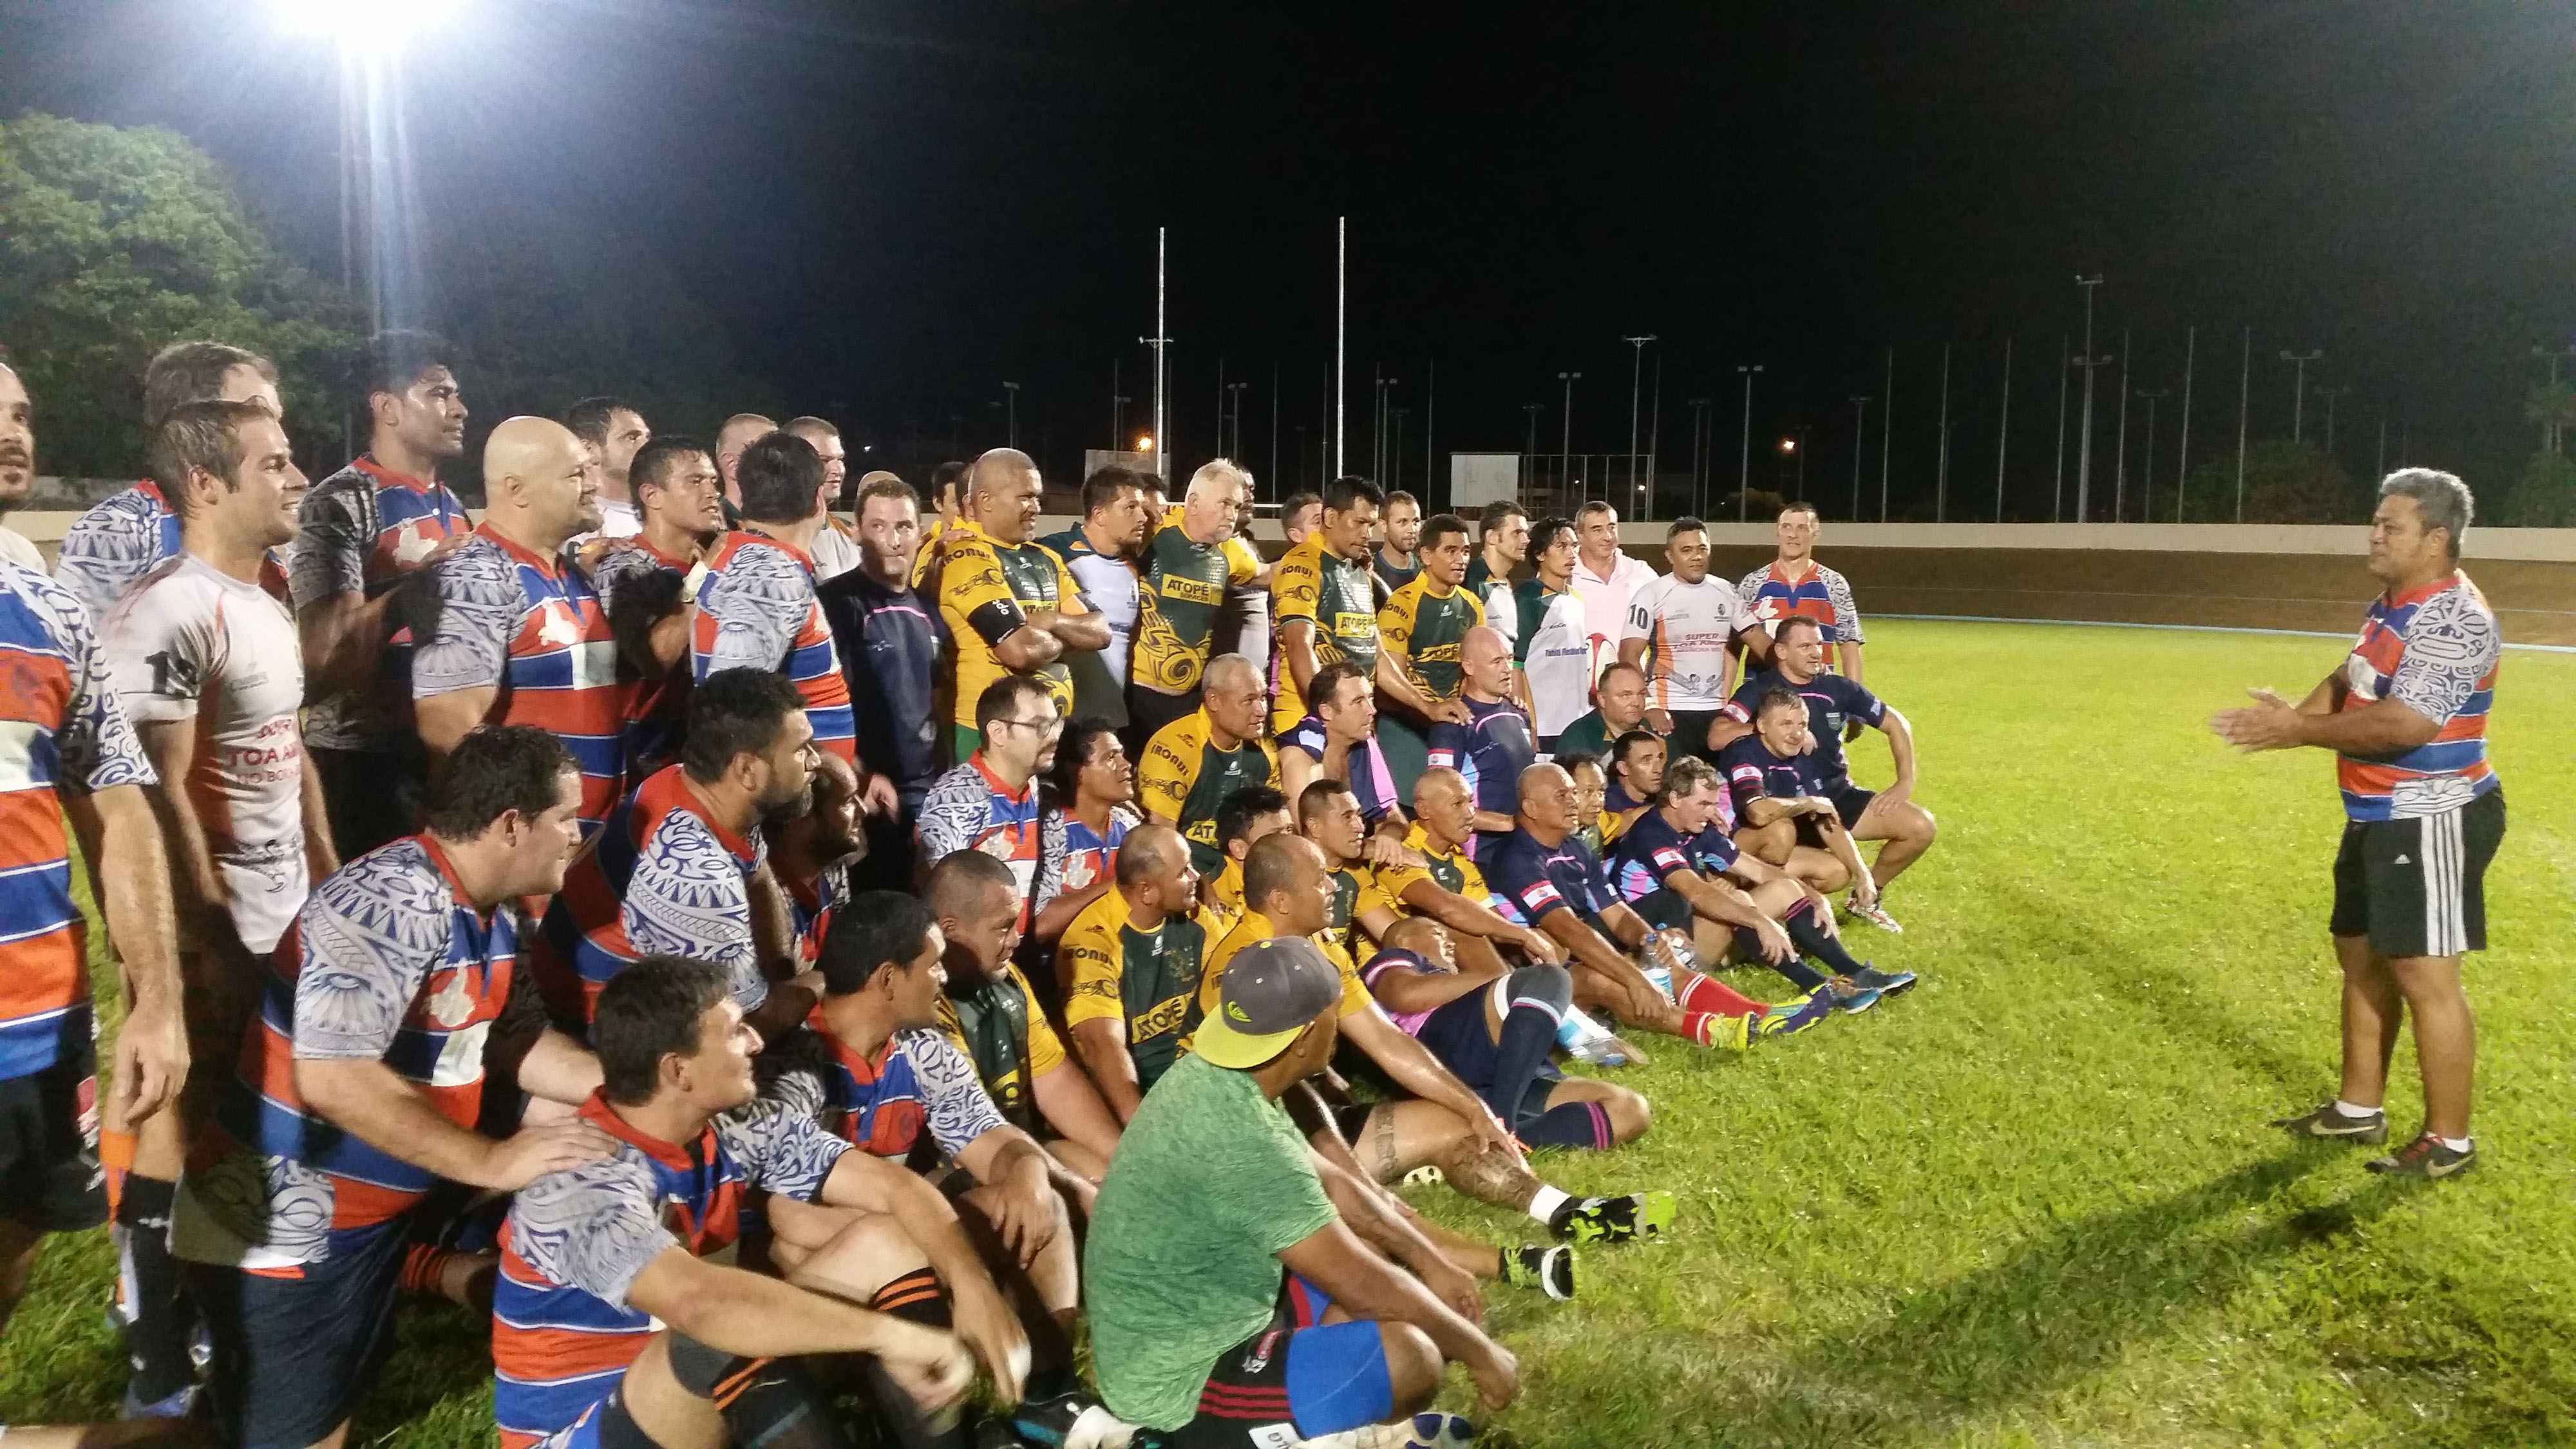 Les vétérans du rugby étaient à l'honneur samedi dernier à Fautaua